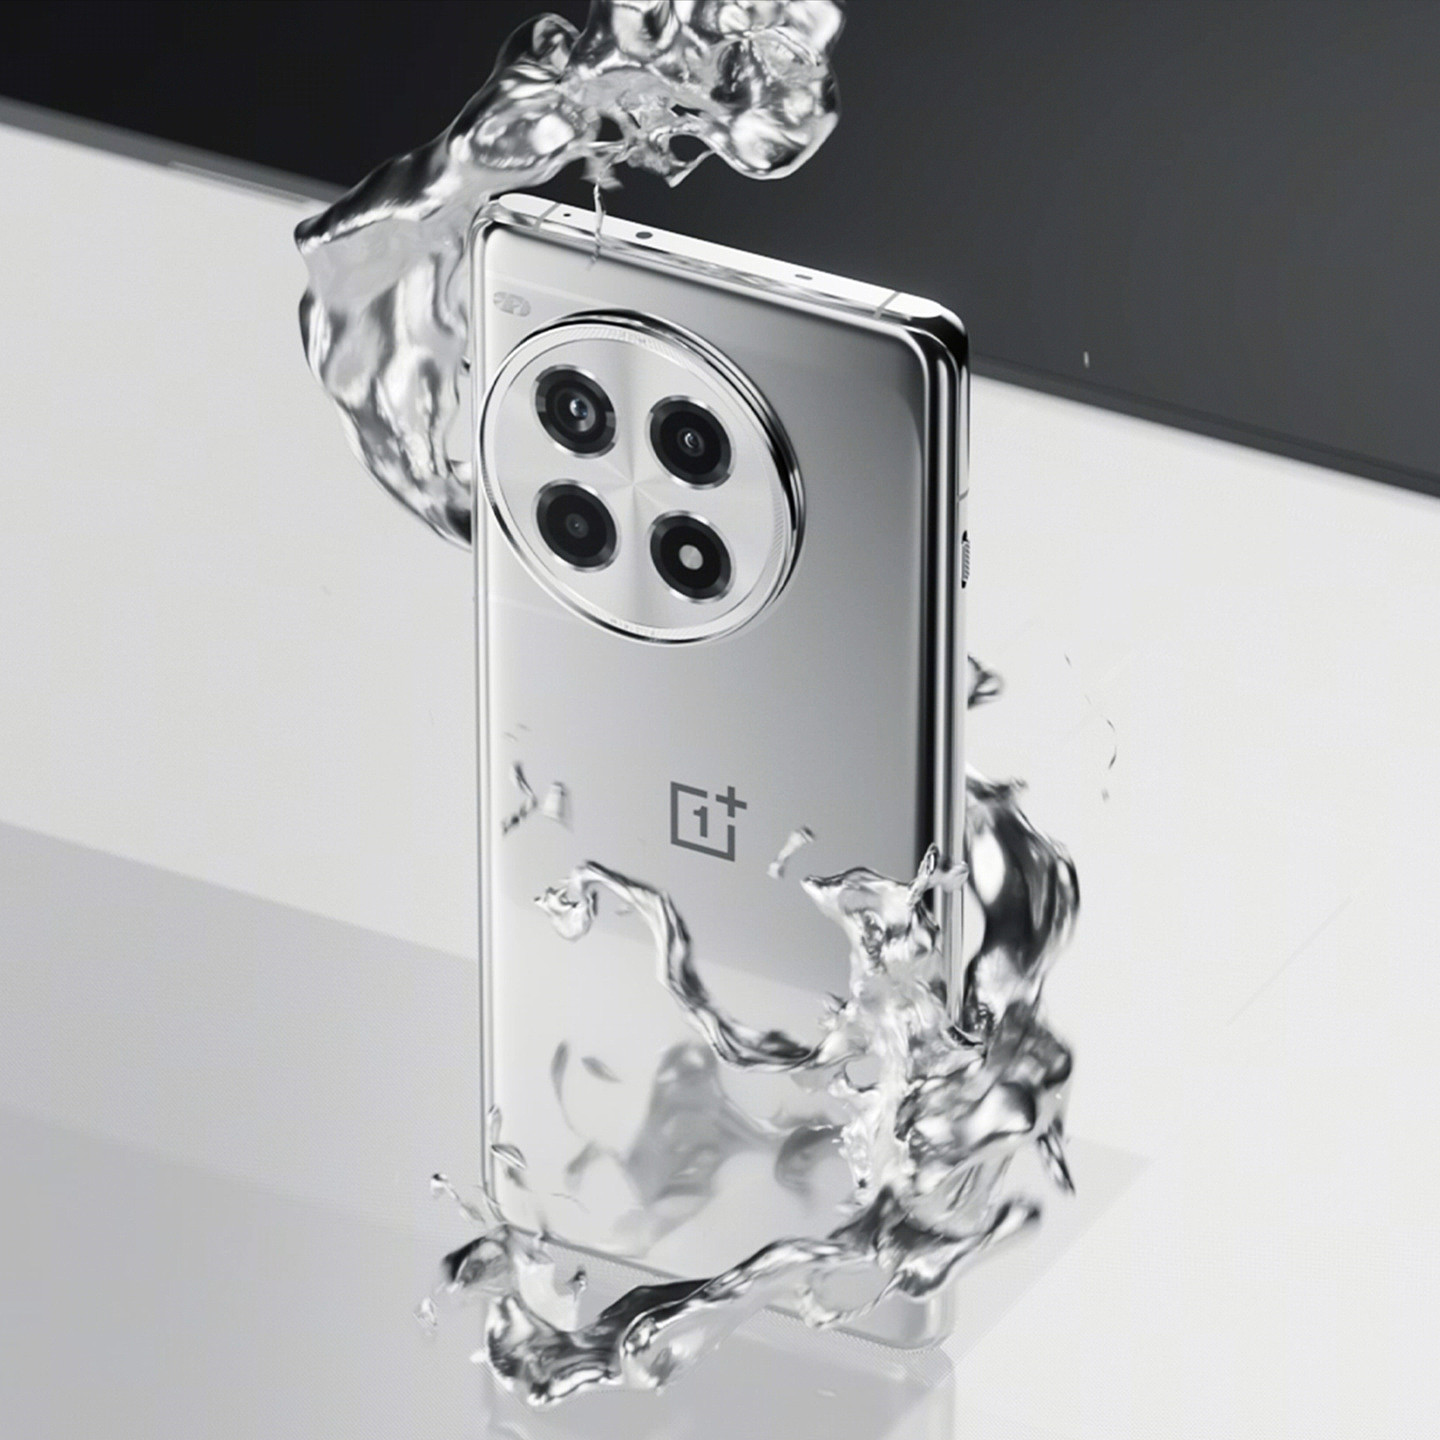 一加 Ace 3 Pro 手机新配色“钛空镜银”公布：首创液态金属玻璃工艺、银色亮面设计 - 1